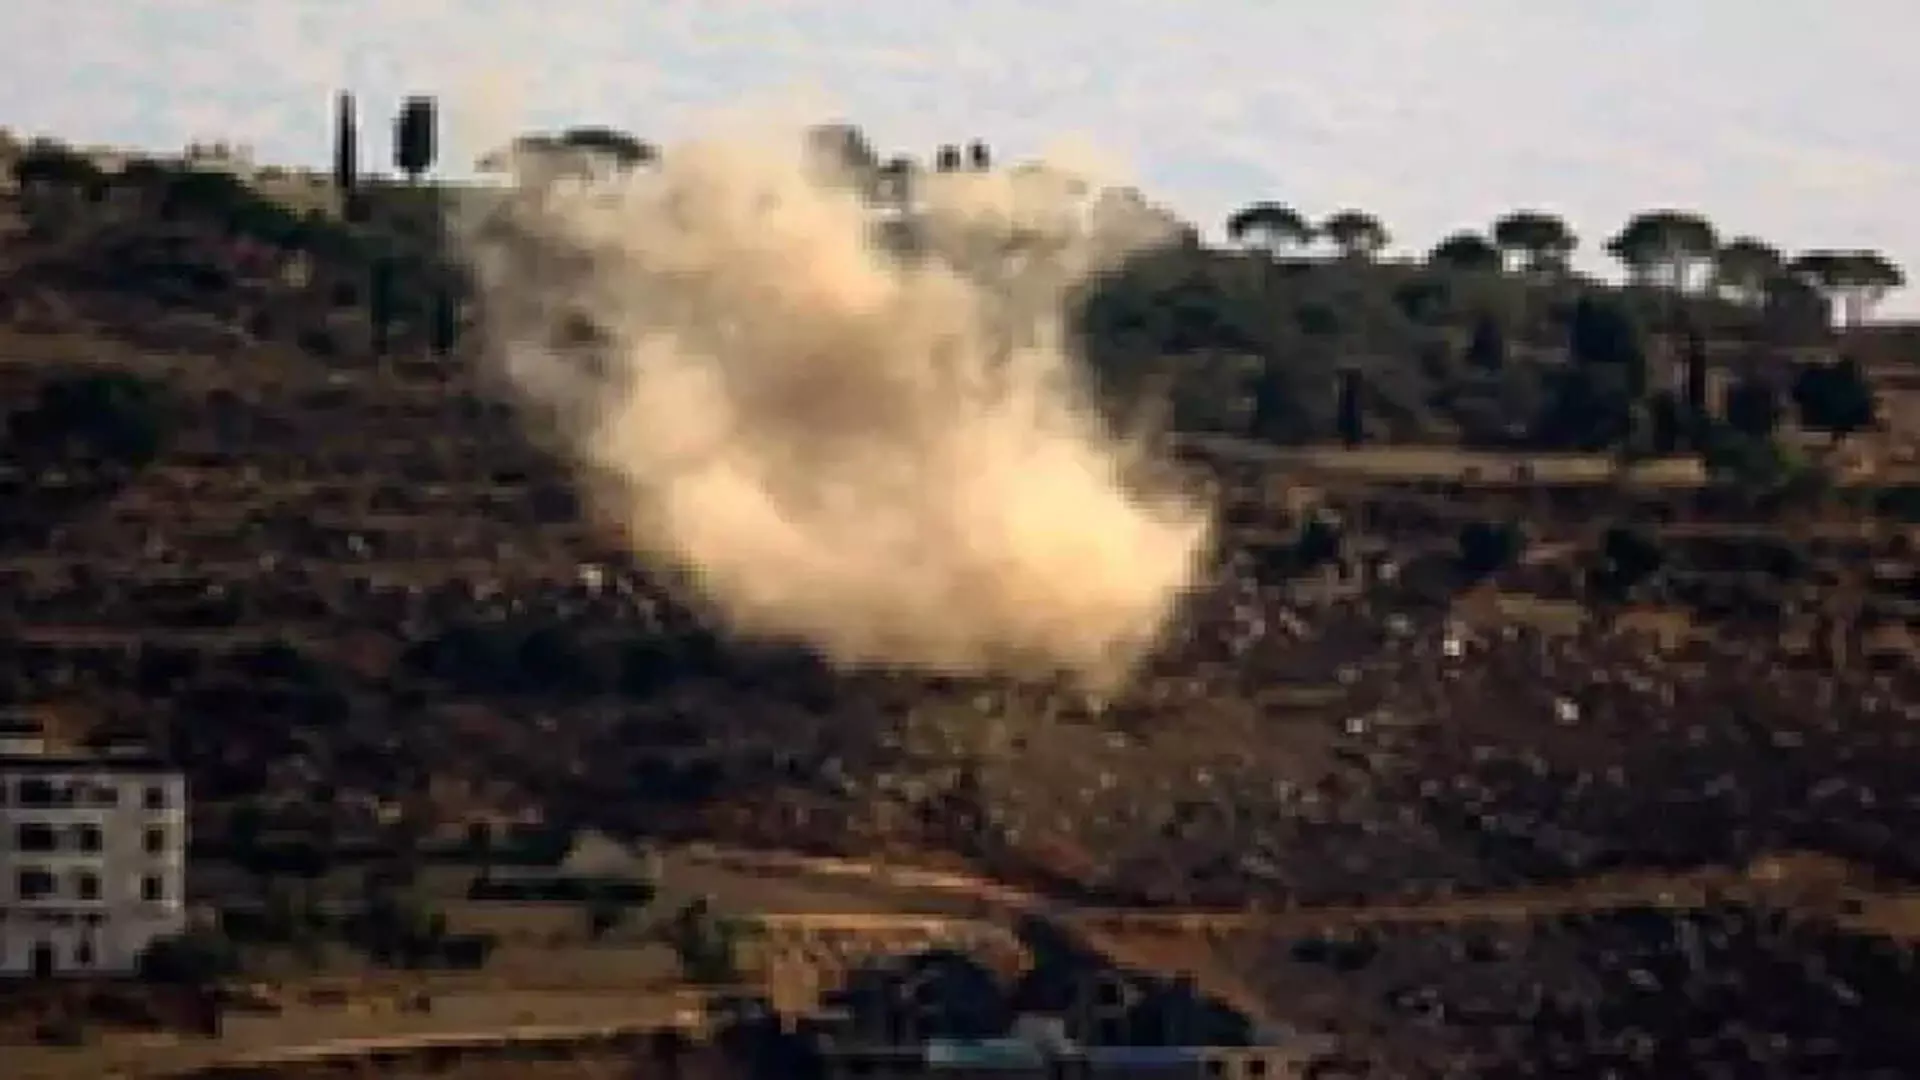 लेबनान में इज़रायली हमलों में 3 की मौत, 3 घायल